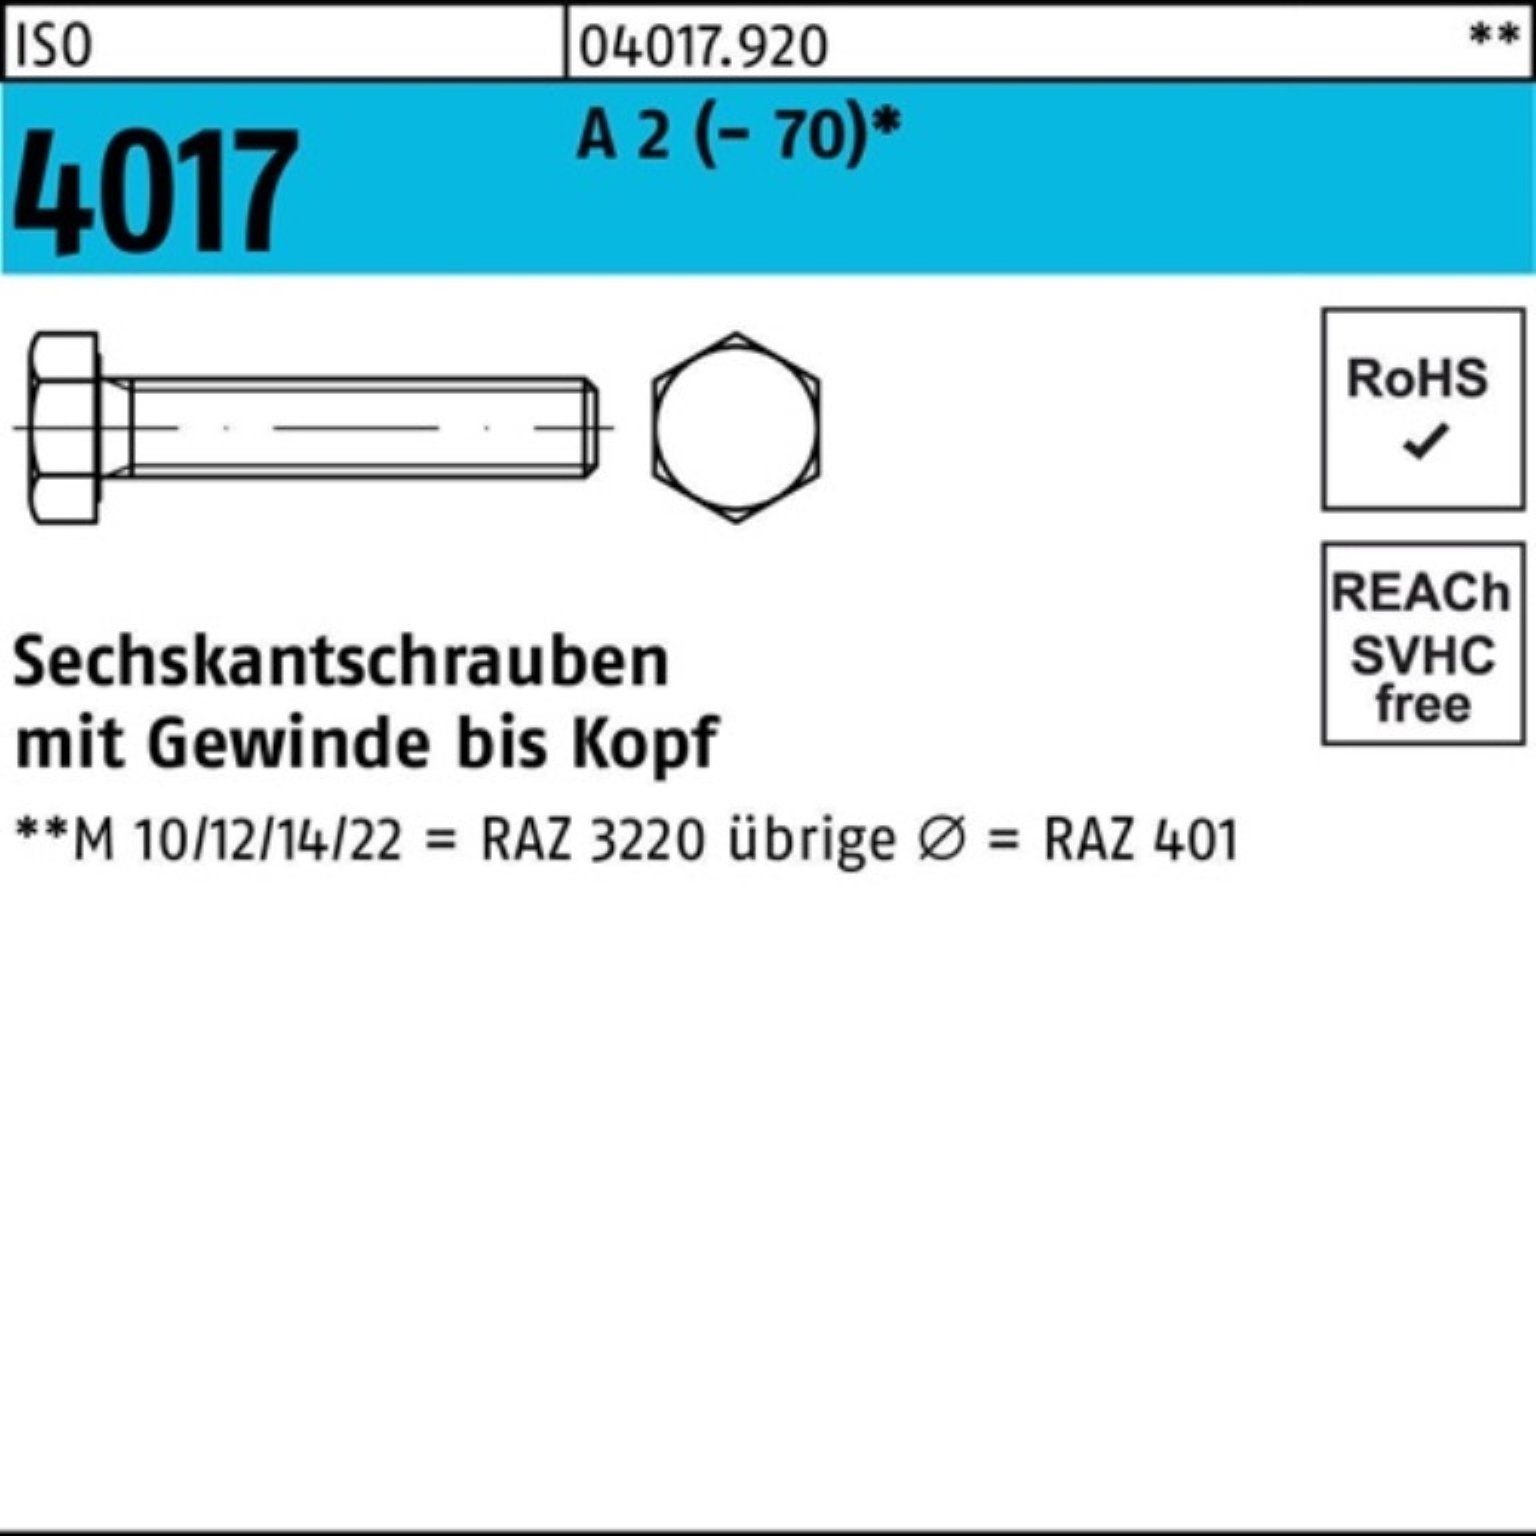 Bufab Sechskantschraube 100er Pack Sechskantschraube ISO 4017 VG M16x 55 A 2 (70) 25 Stück